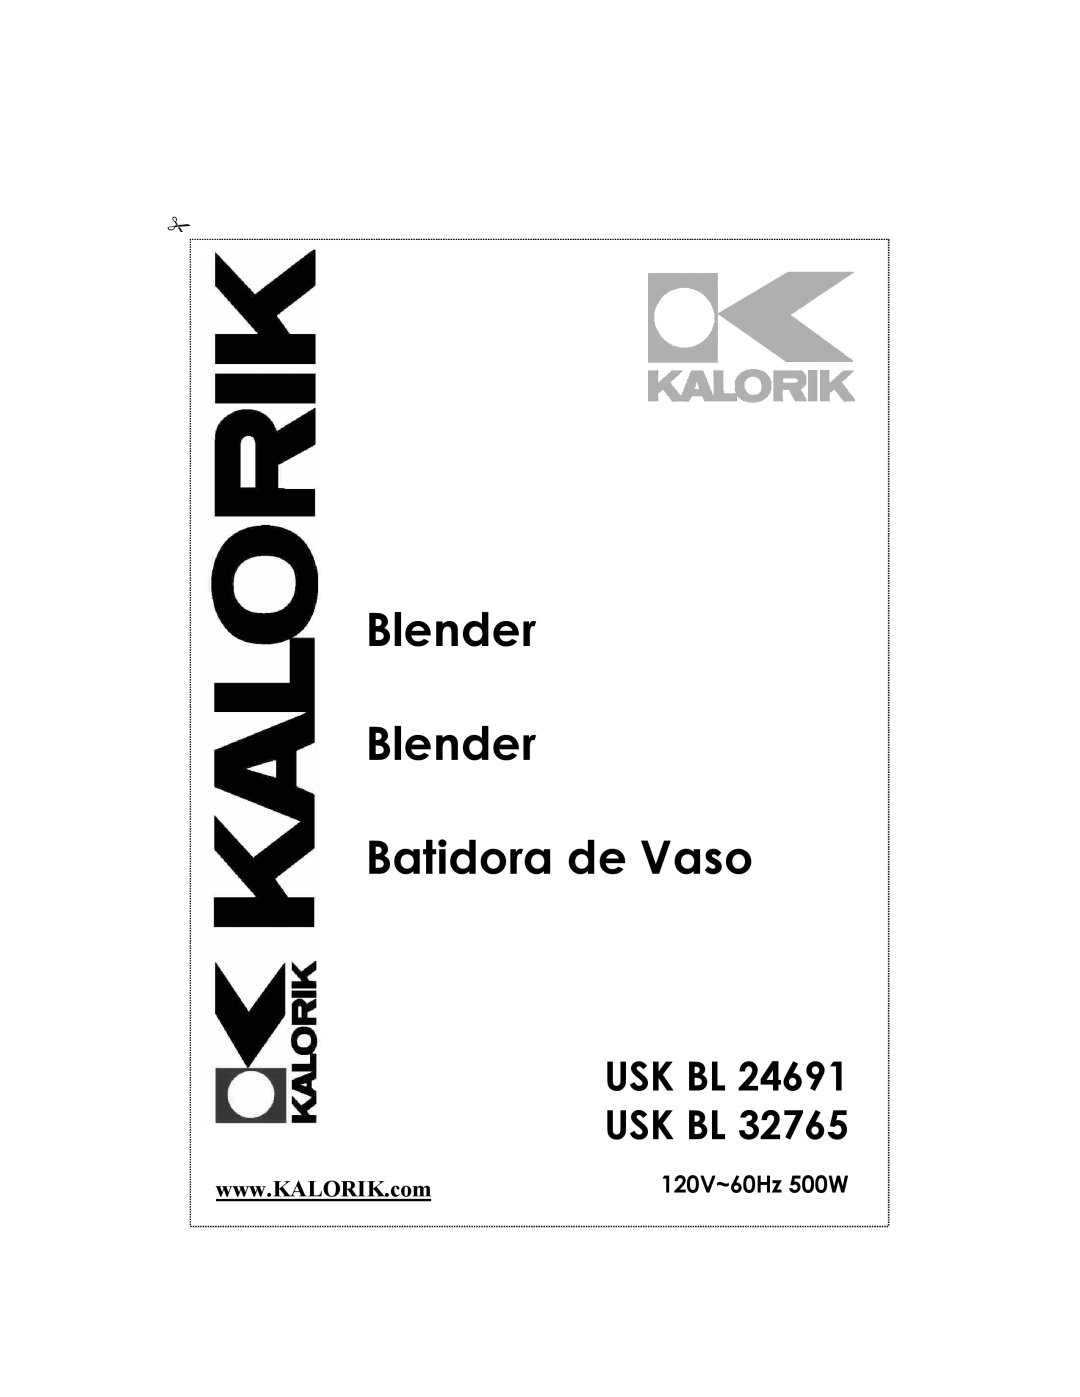 Kalorik USK BL 24691 manual Usk Bl Usk Bl, Blender Blender Batidora de Vaso, 120V~60Hz 500W 